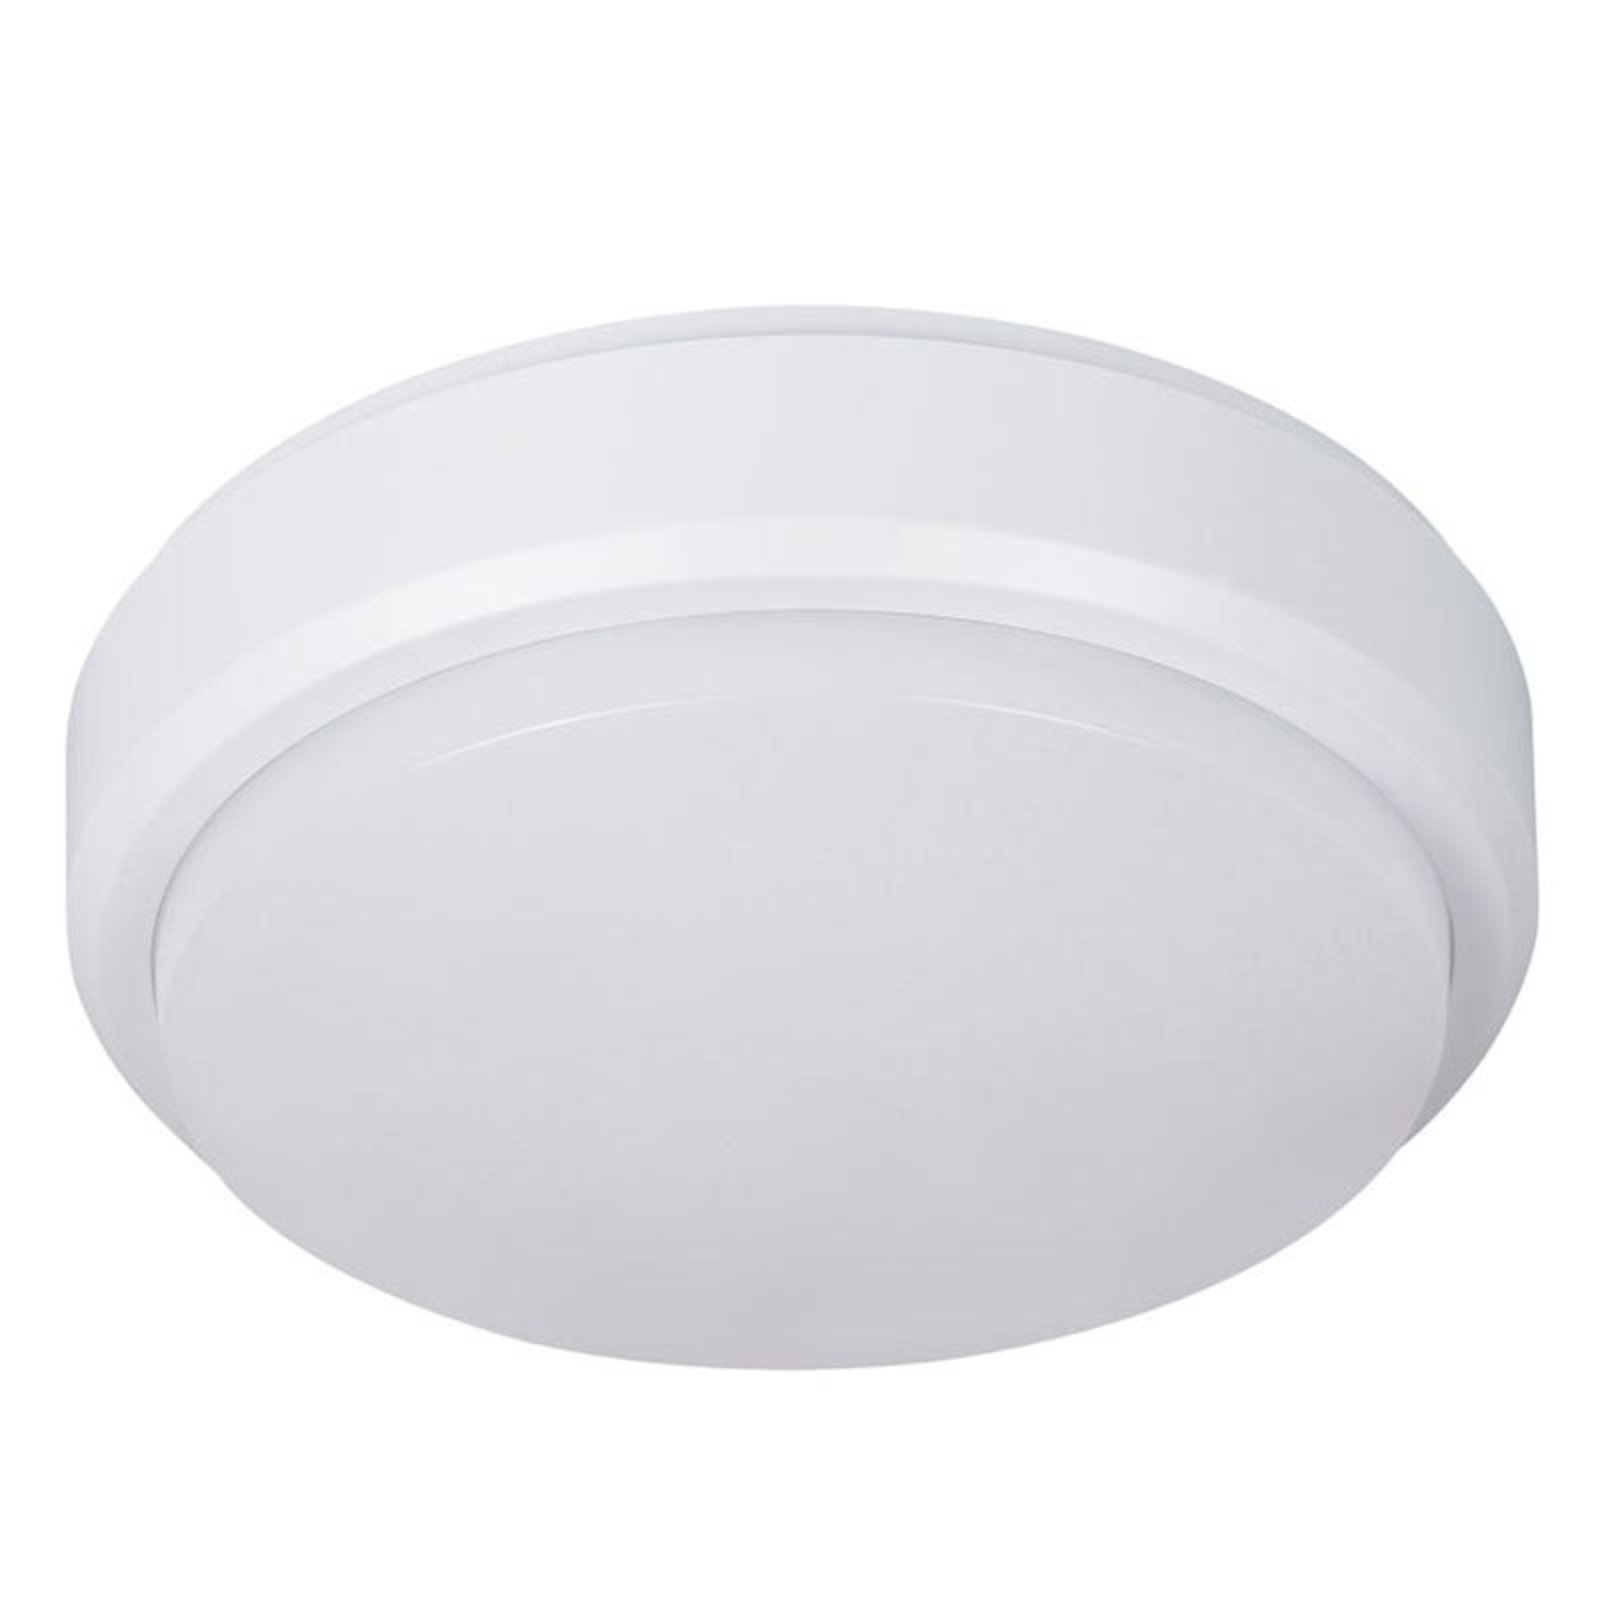 Pictor LED stropna svjetiljka, okrugla, klasa zaštite IP54